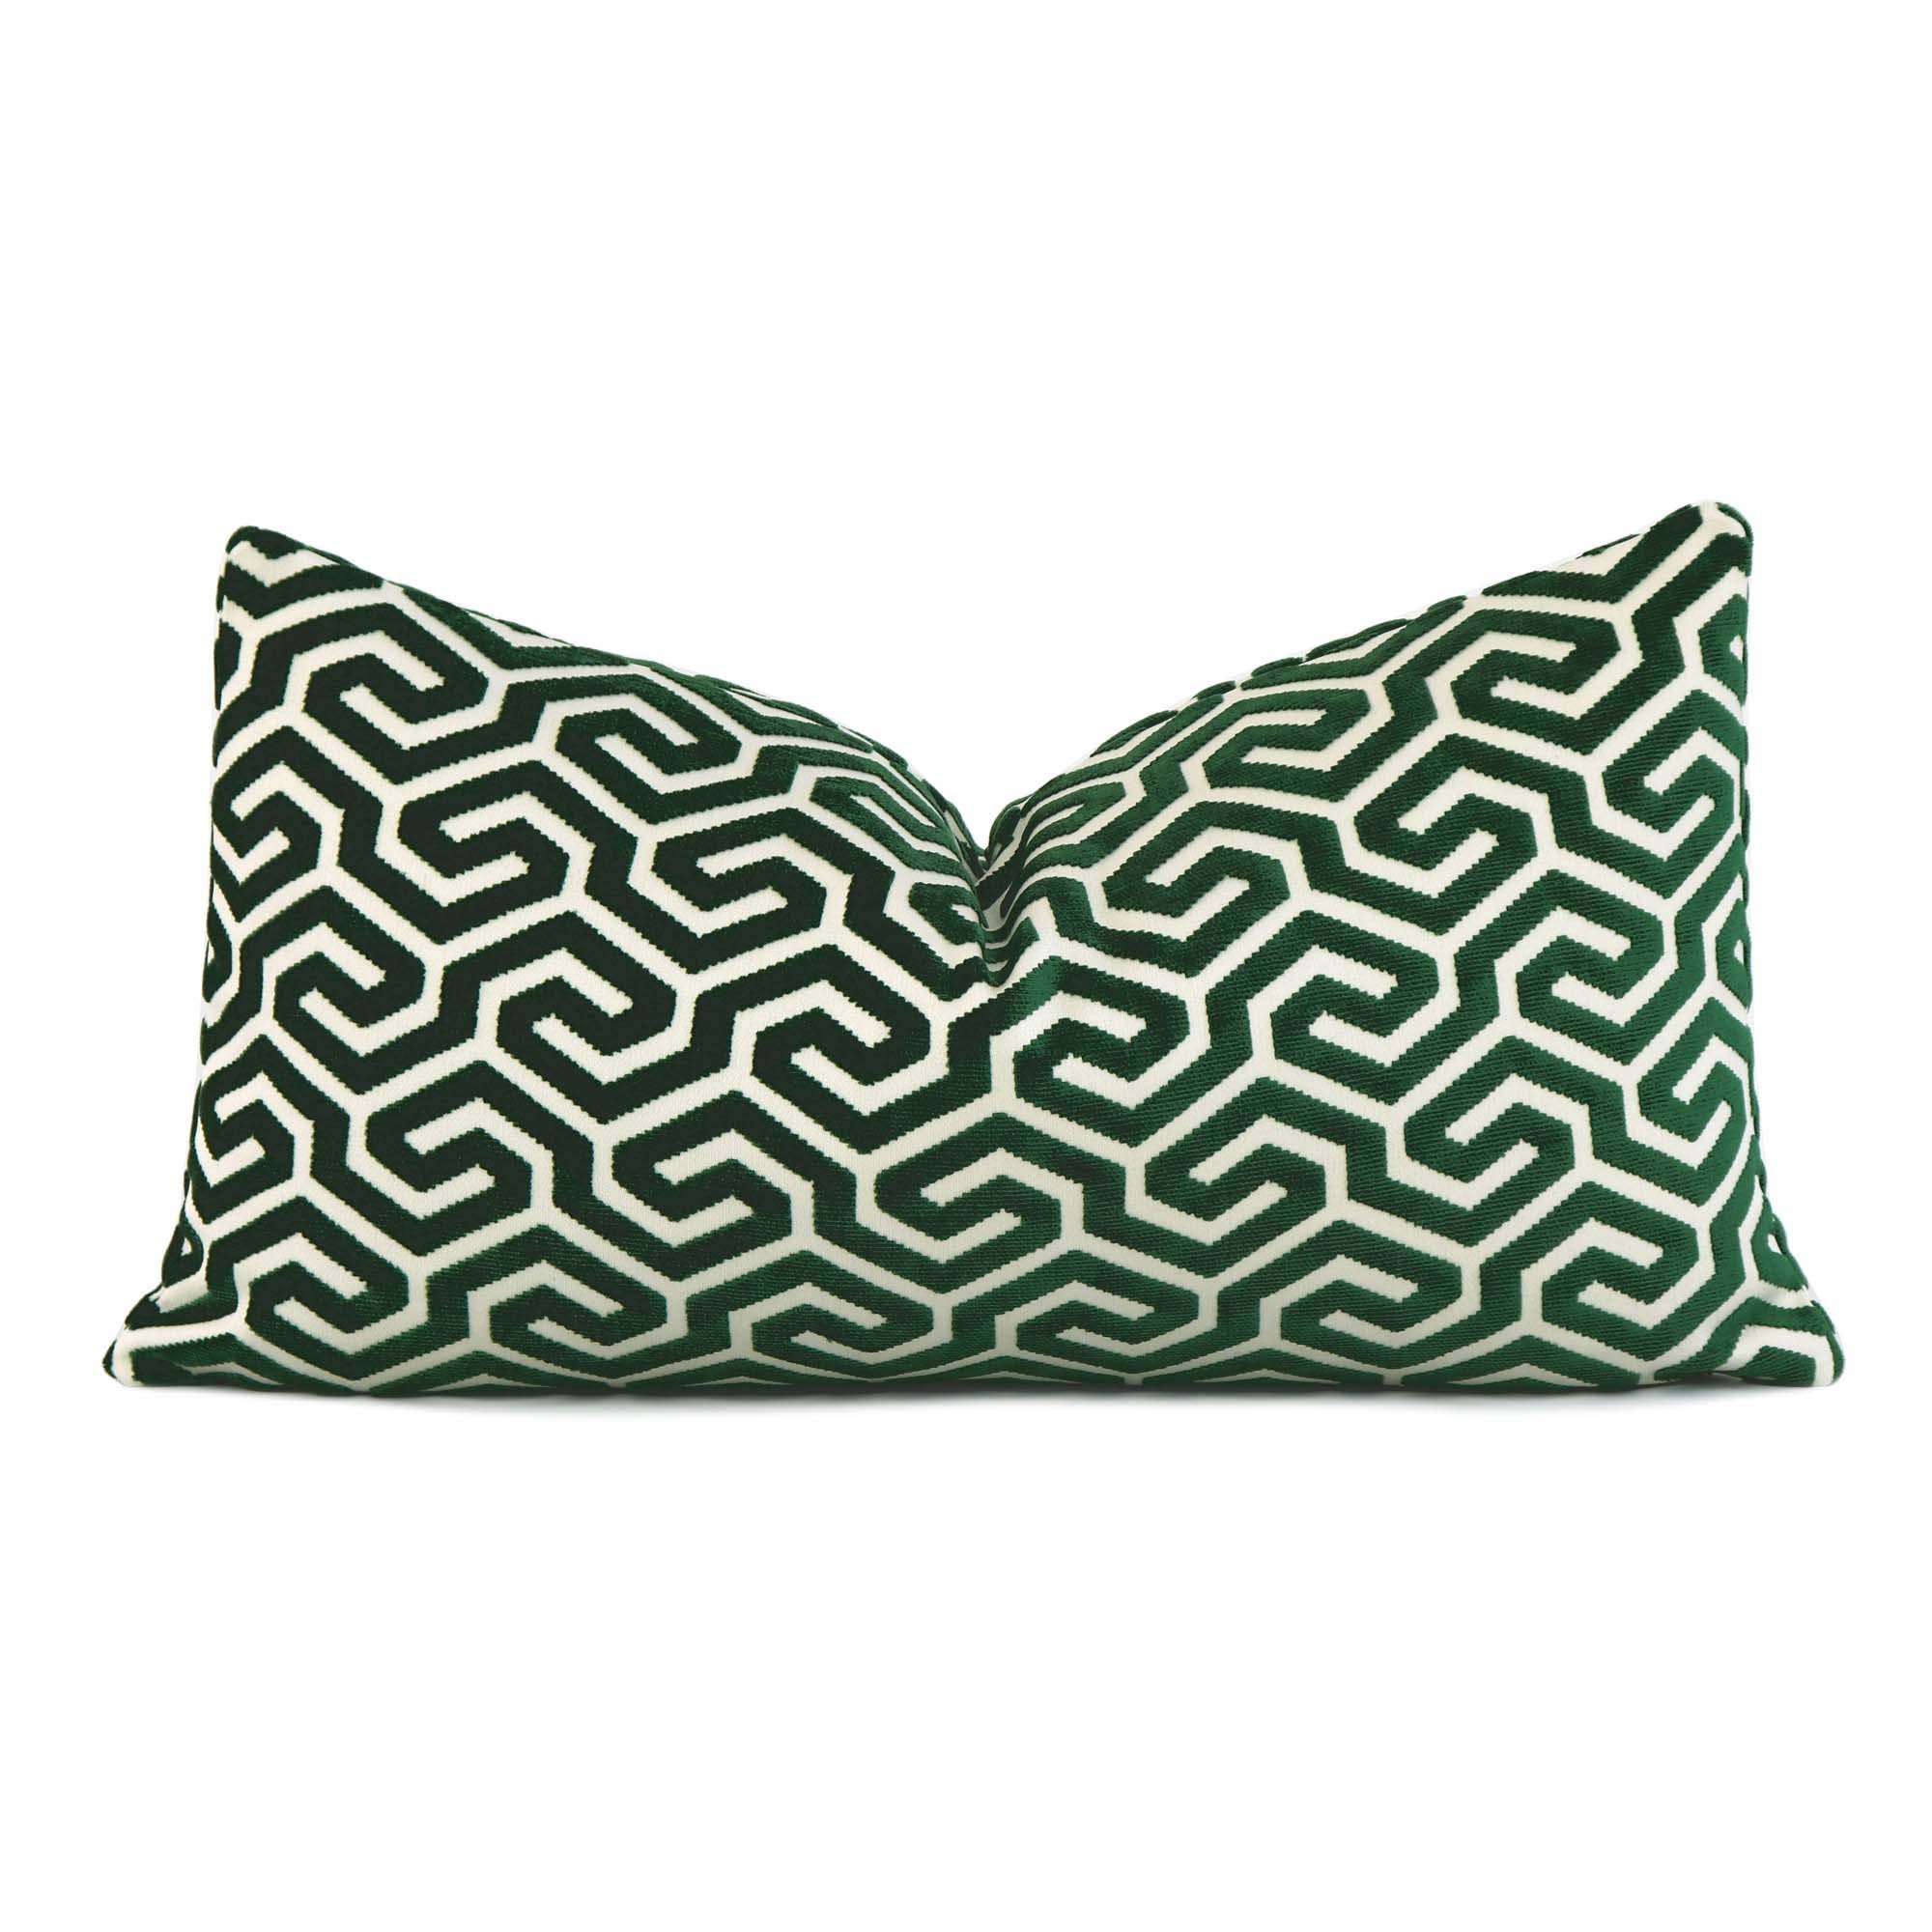 Velvety Soft Schumacher Florentine Emerald Throw Pillow Cover